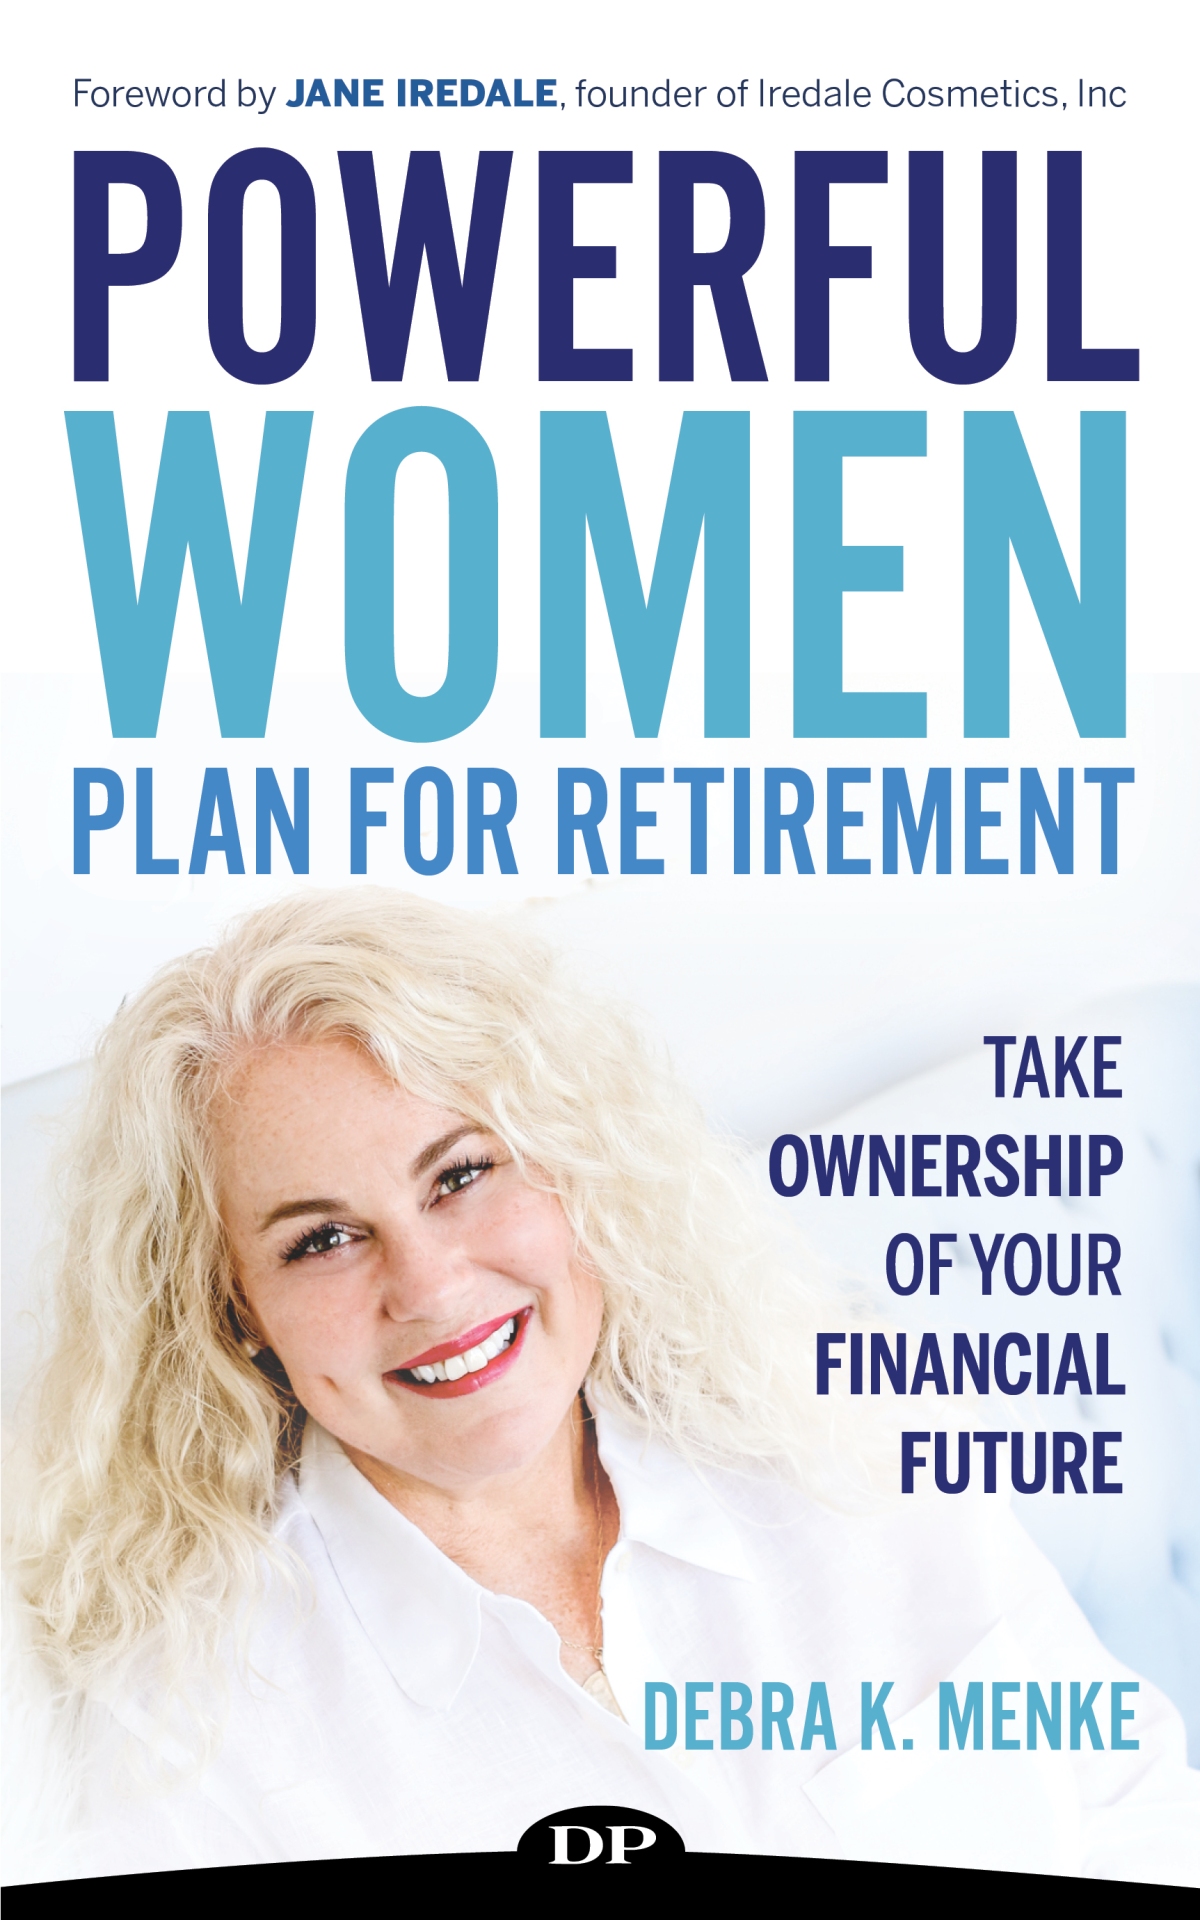 Powerful Women Plan for Retirement by Debra K. Menke